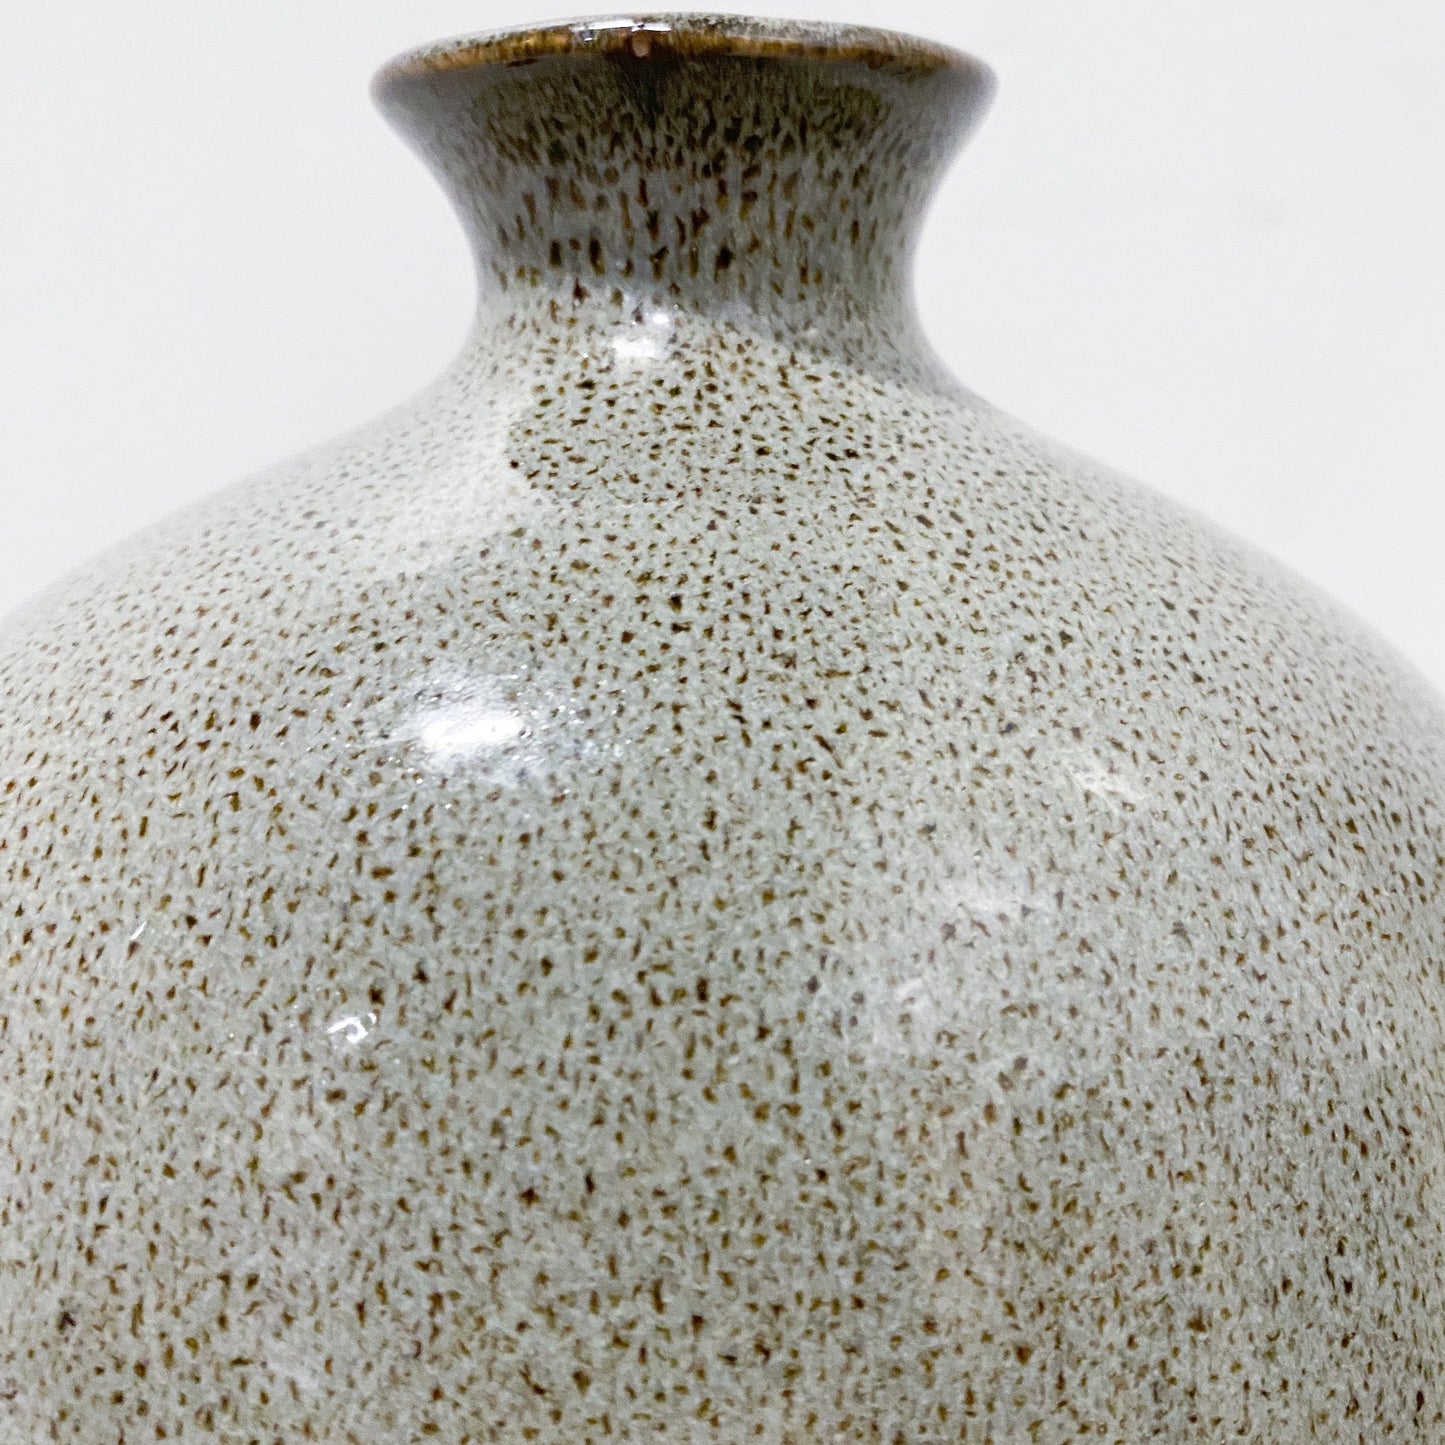 Slim Speckled Vase